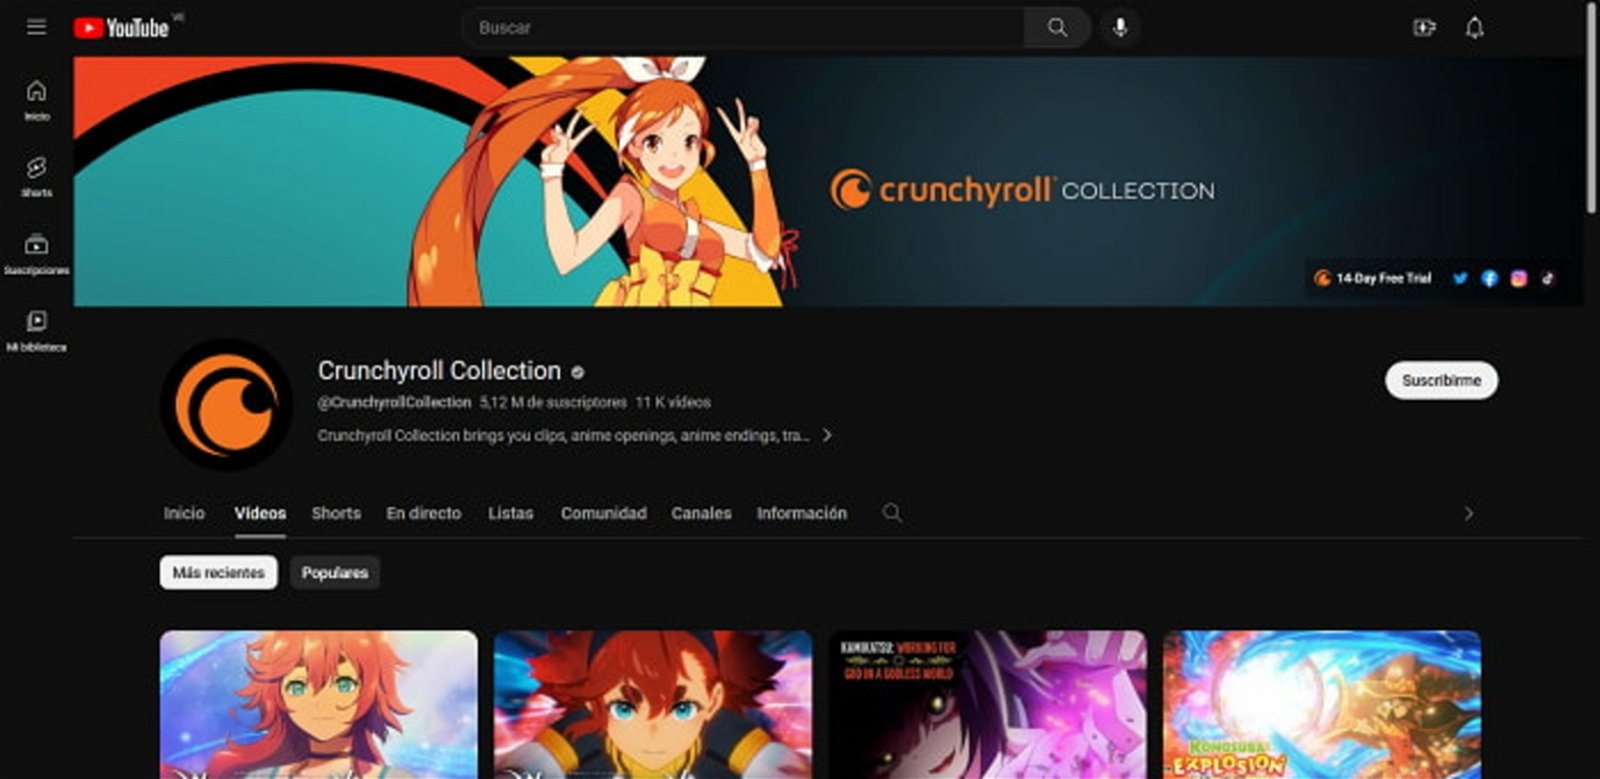 Crunchyroll Collection es un canal de Youtube de anime sumamente popular